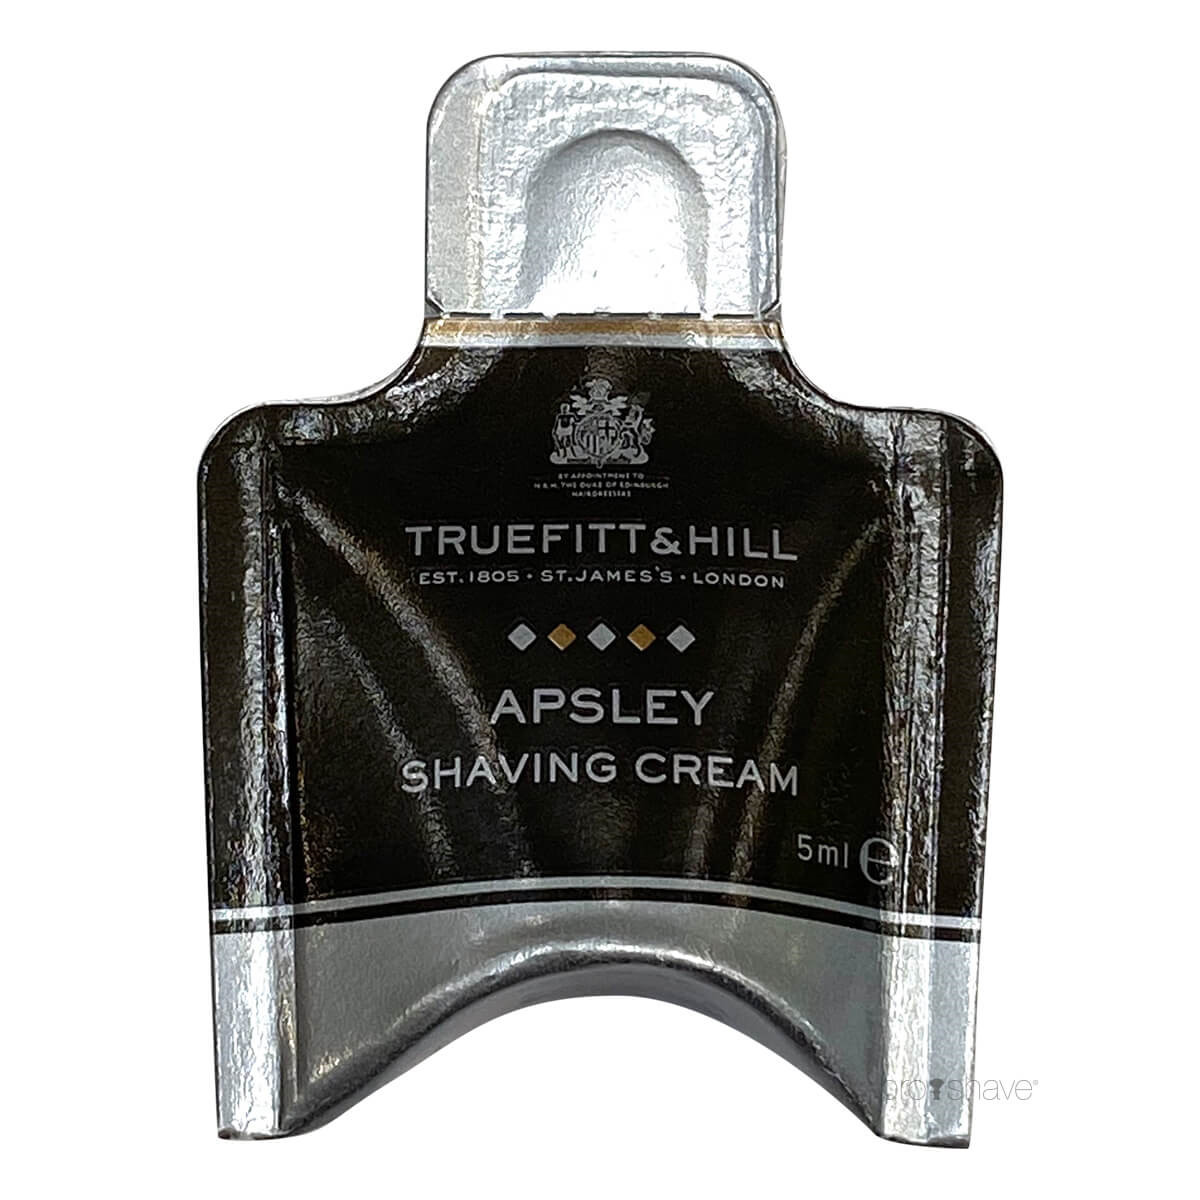 Truefitt & Hill Apsley Shaving Cream Sample Pack, 5 ml.